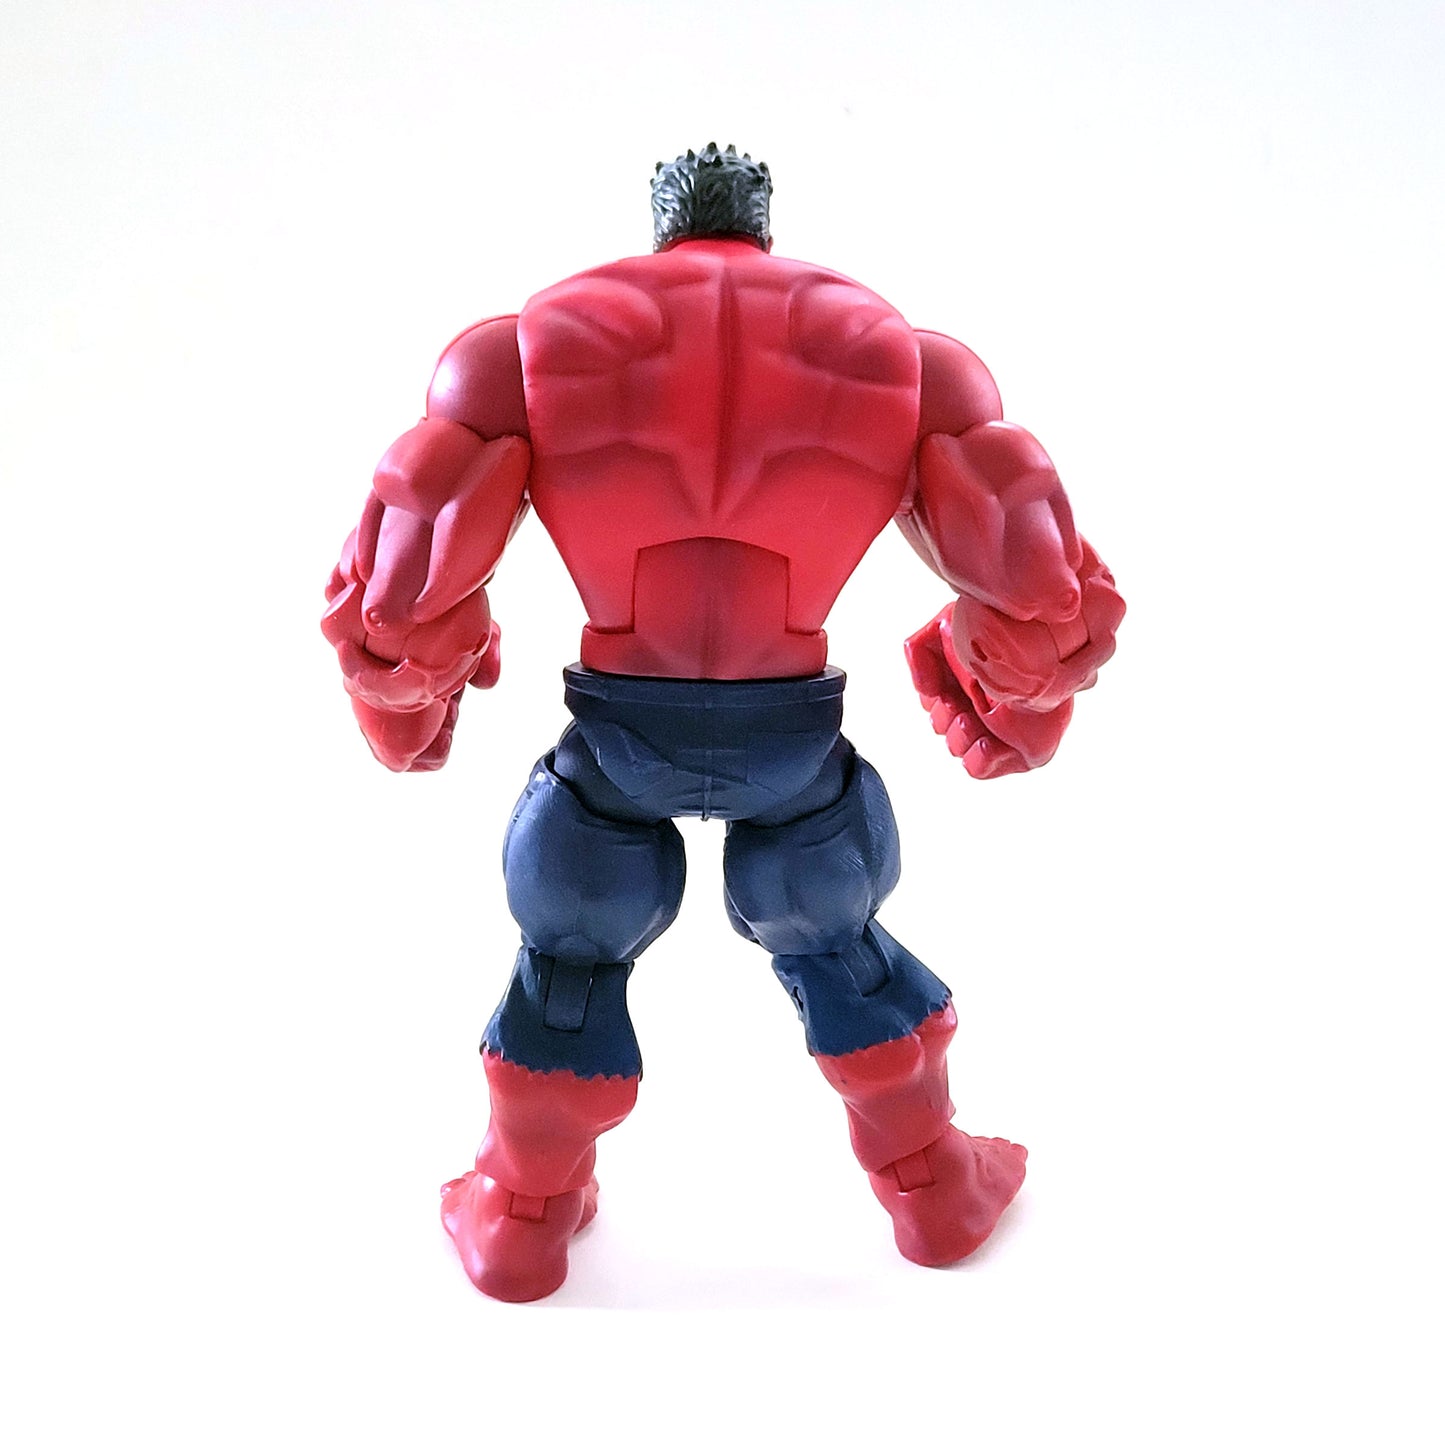 Marvel Legends Red Hulk Build-A-Figure